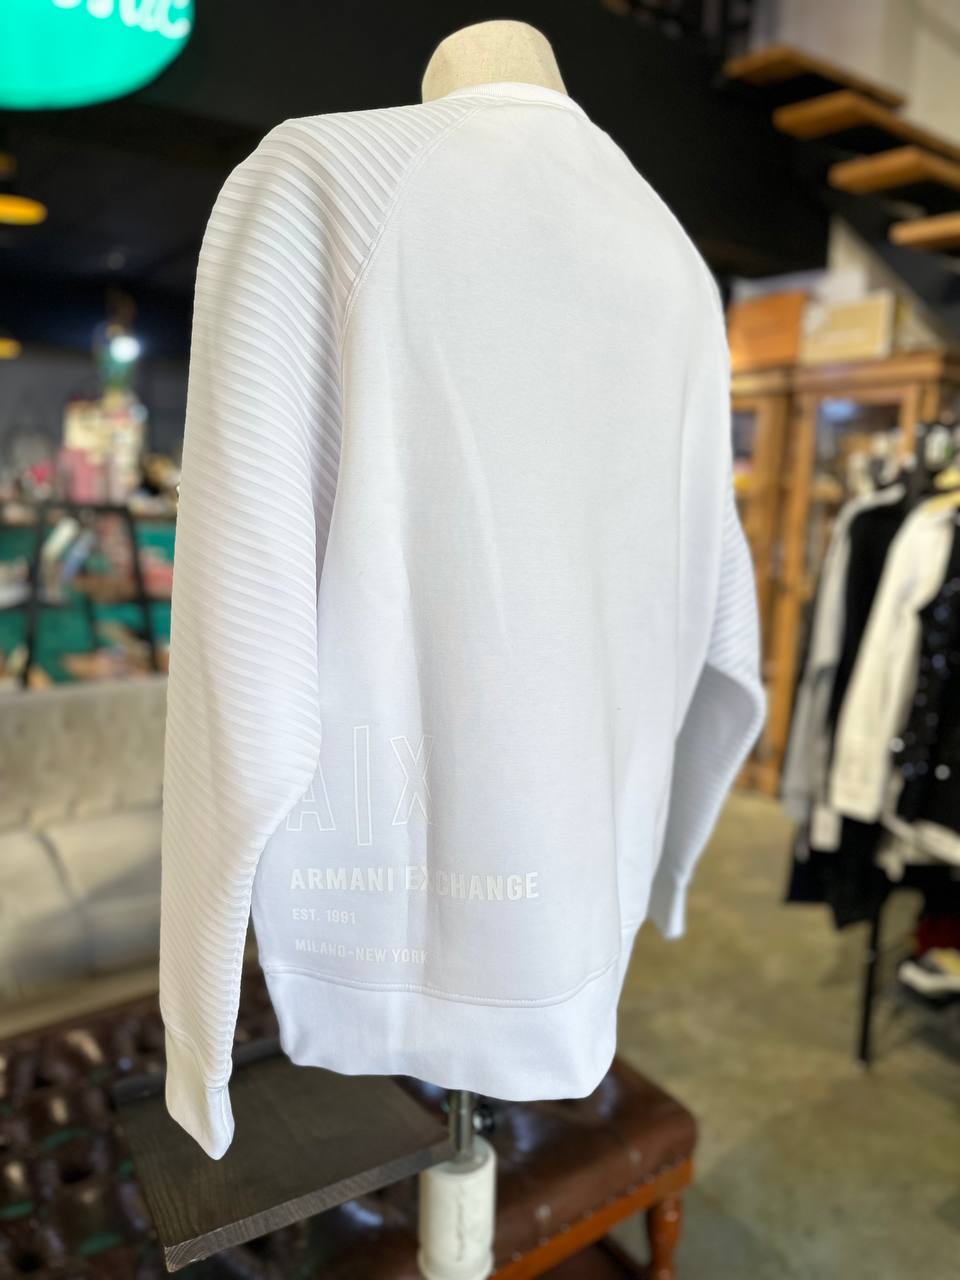 Armani exchange sweater